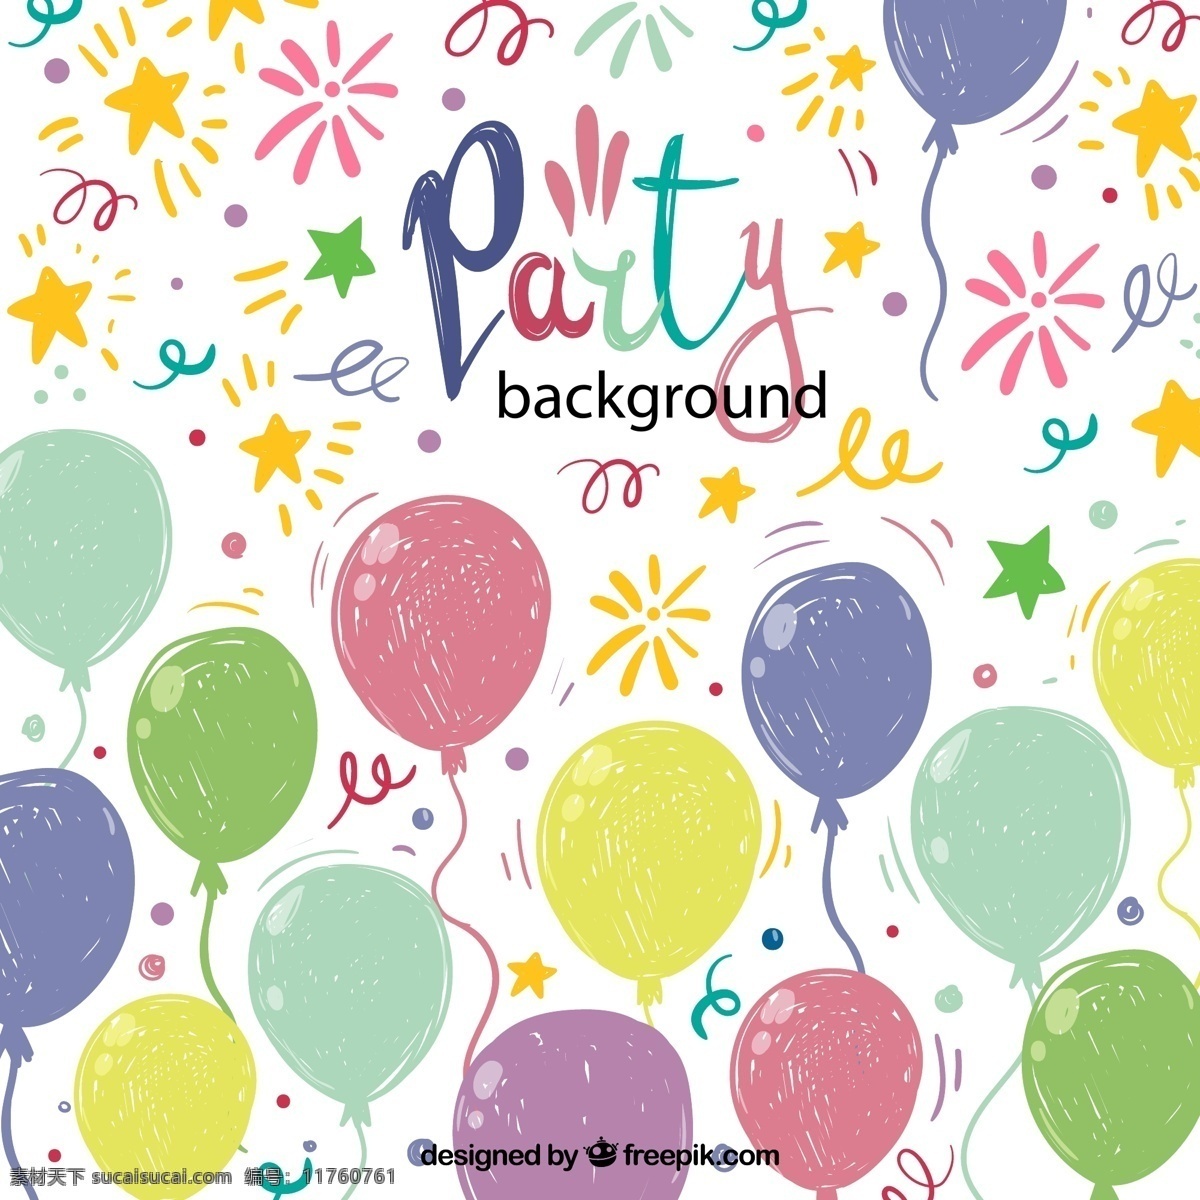 彩绘 派对 气球 背景图片 彩色纸屑 节日 矢量图 源文件 矢量 高清图片